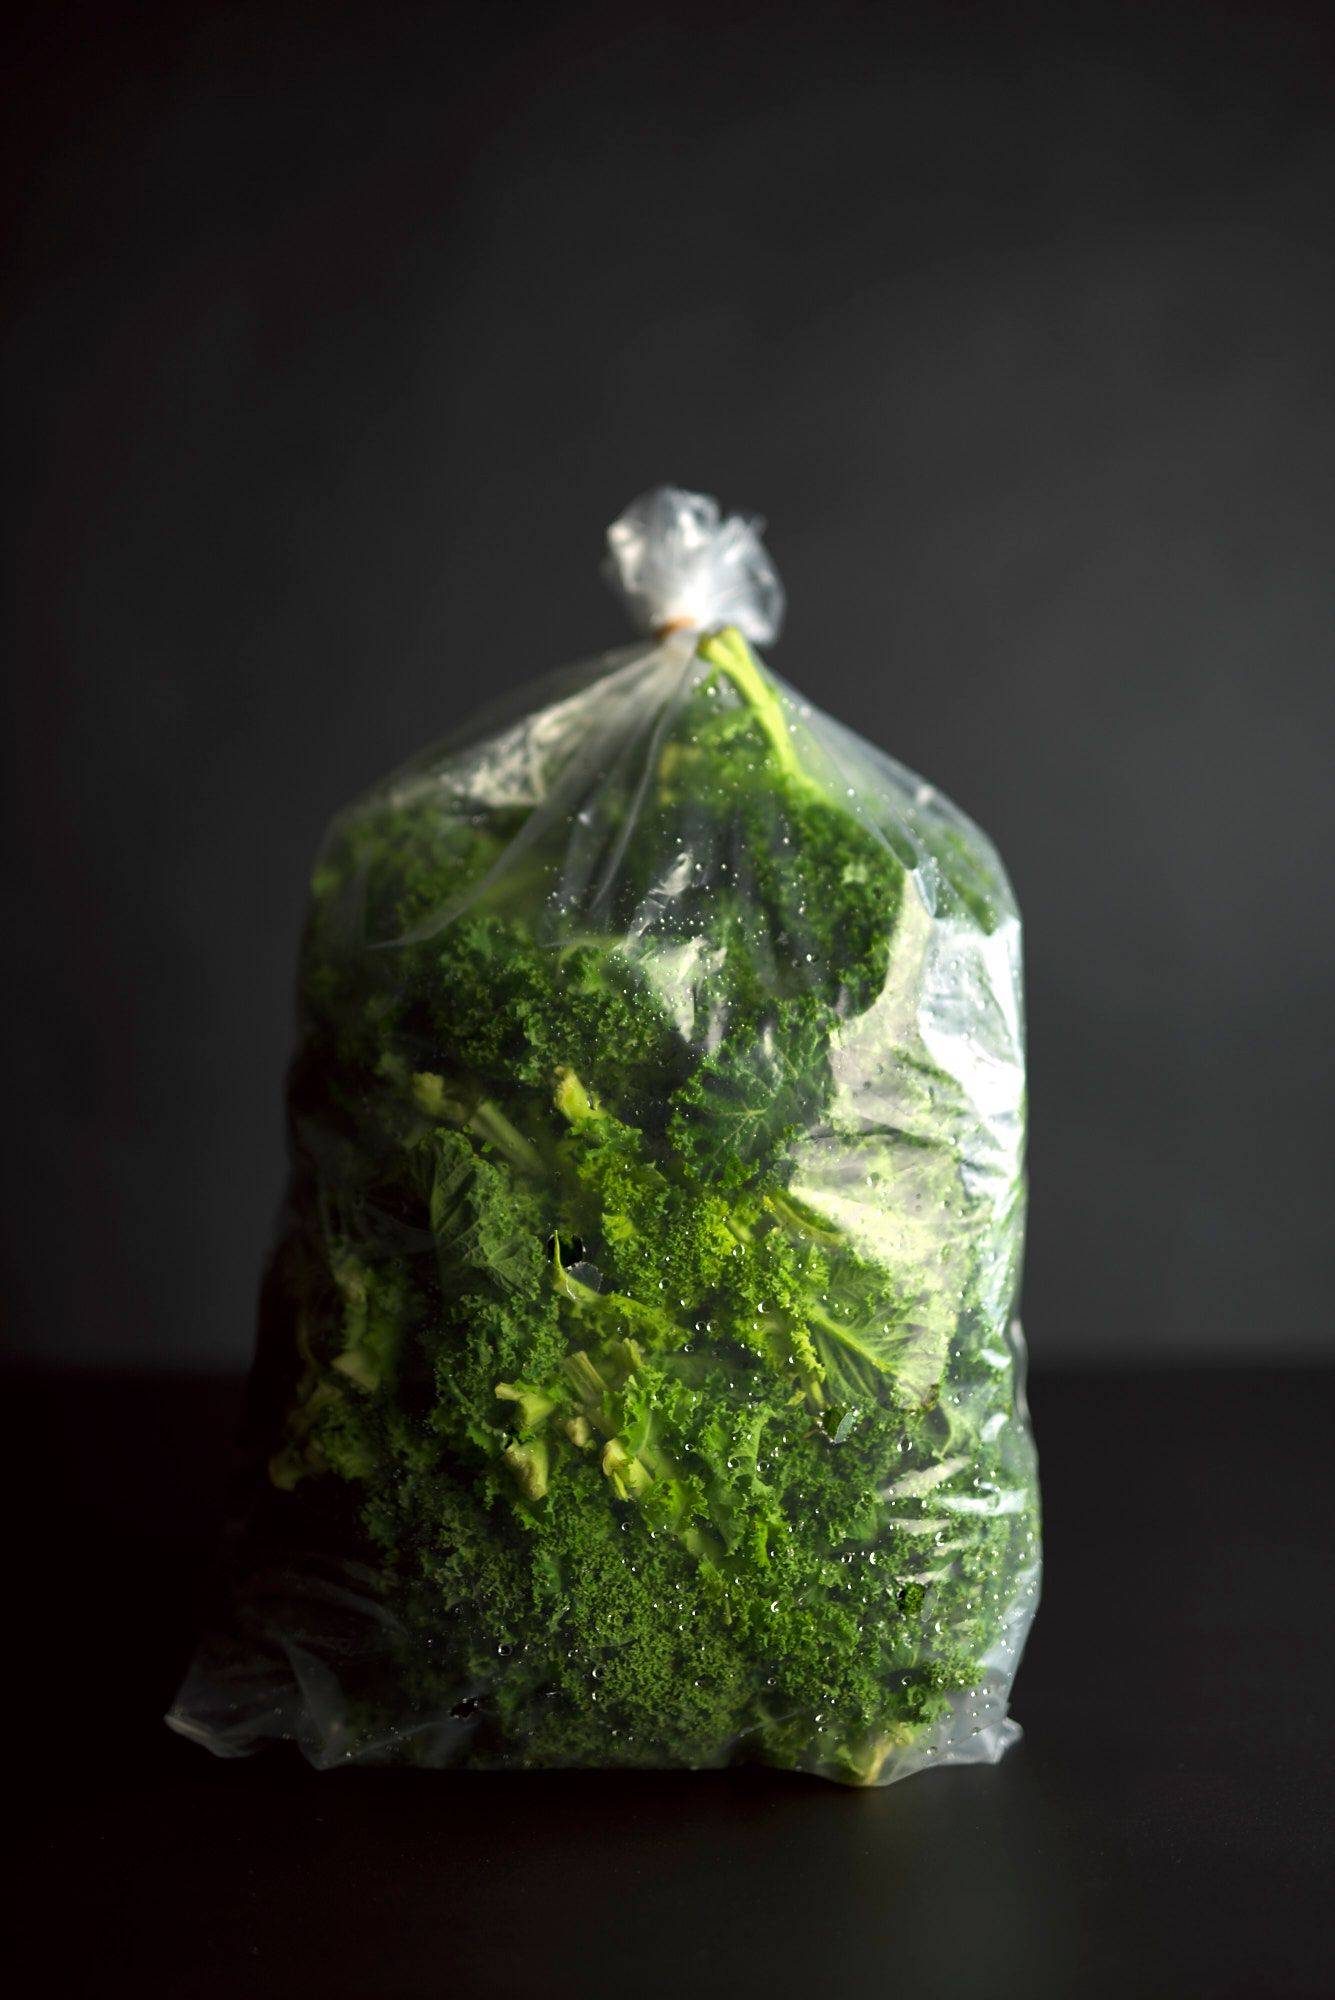 a bag of kale on black background